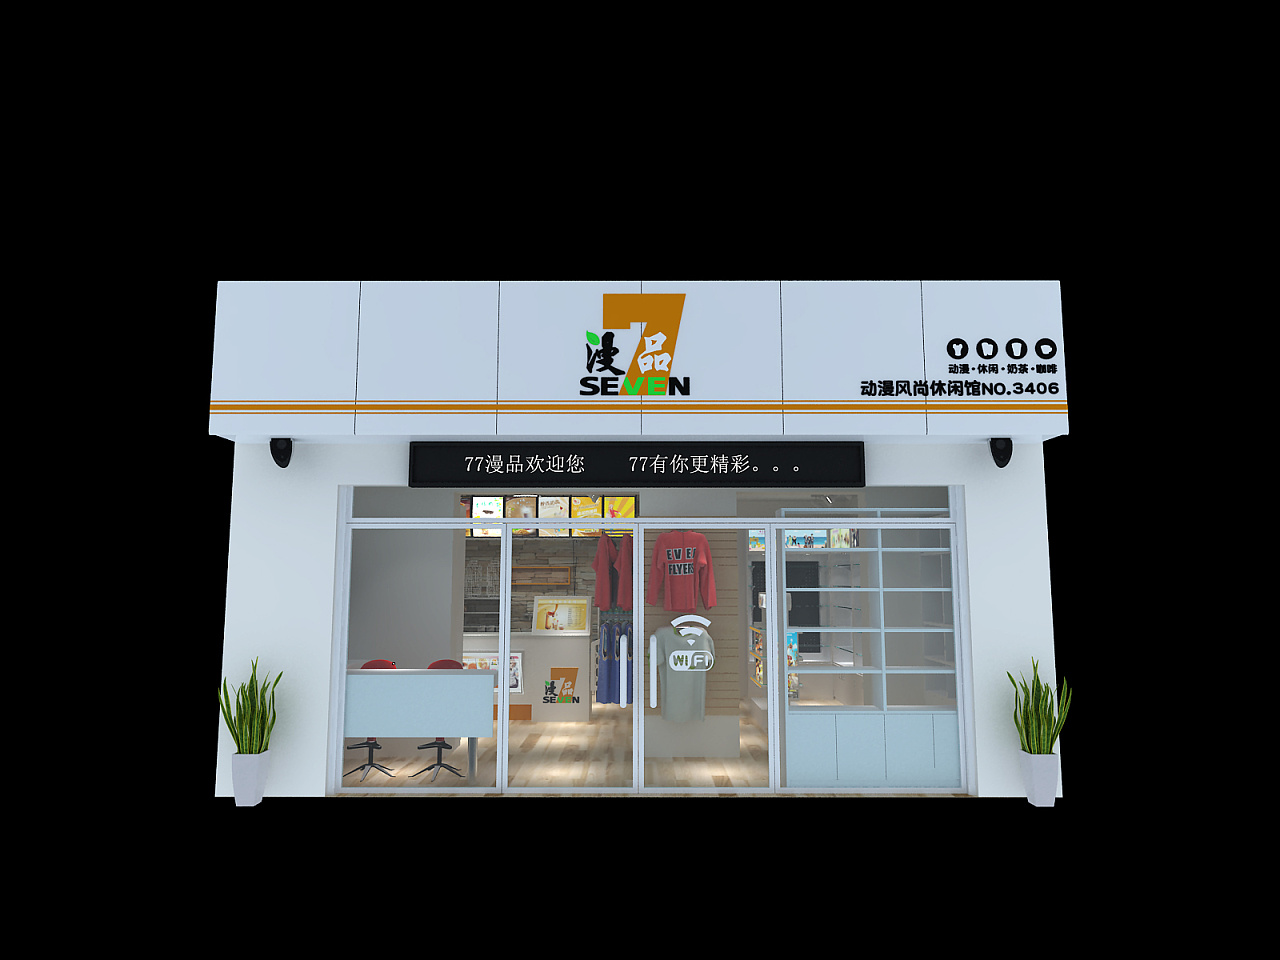 奶茶店店面设计图 咖啡店3d设计图 动漫店店面装修设计图